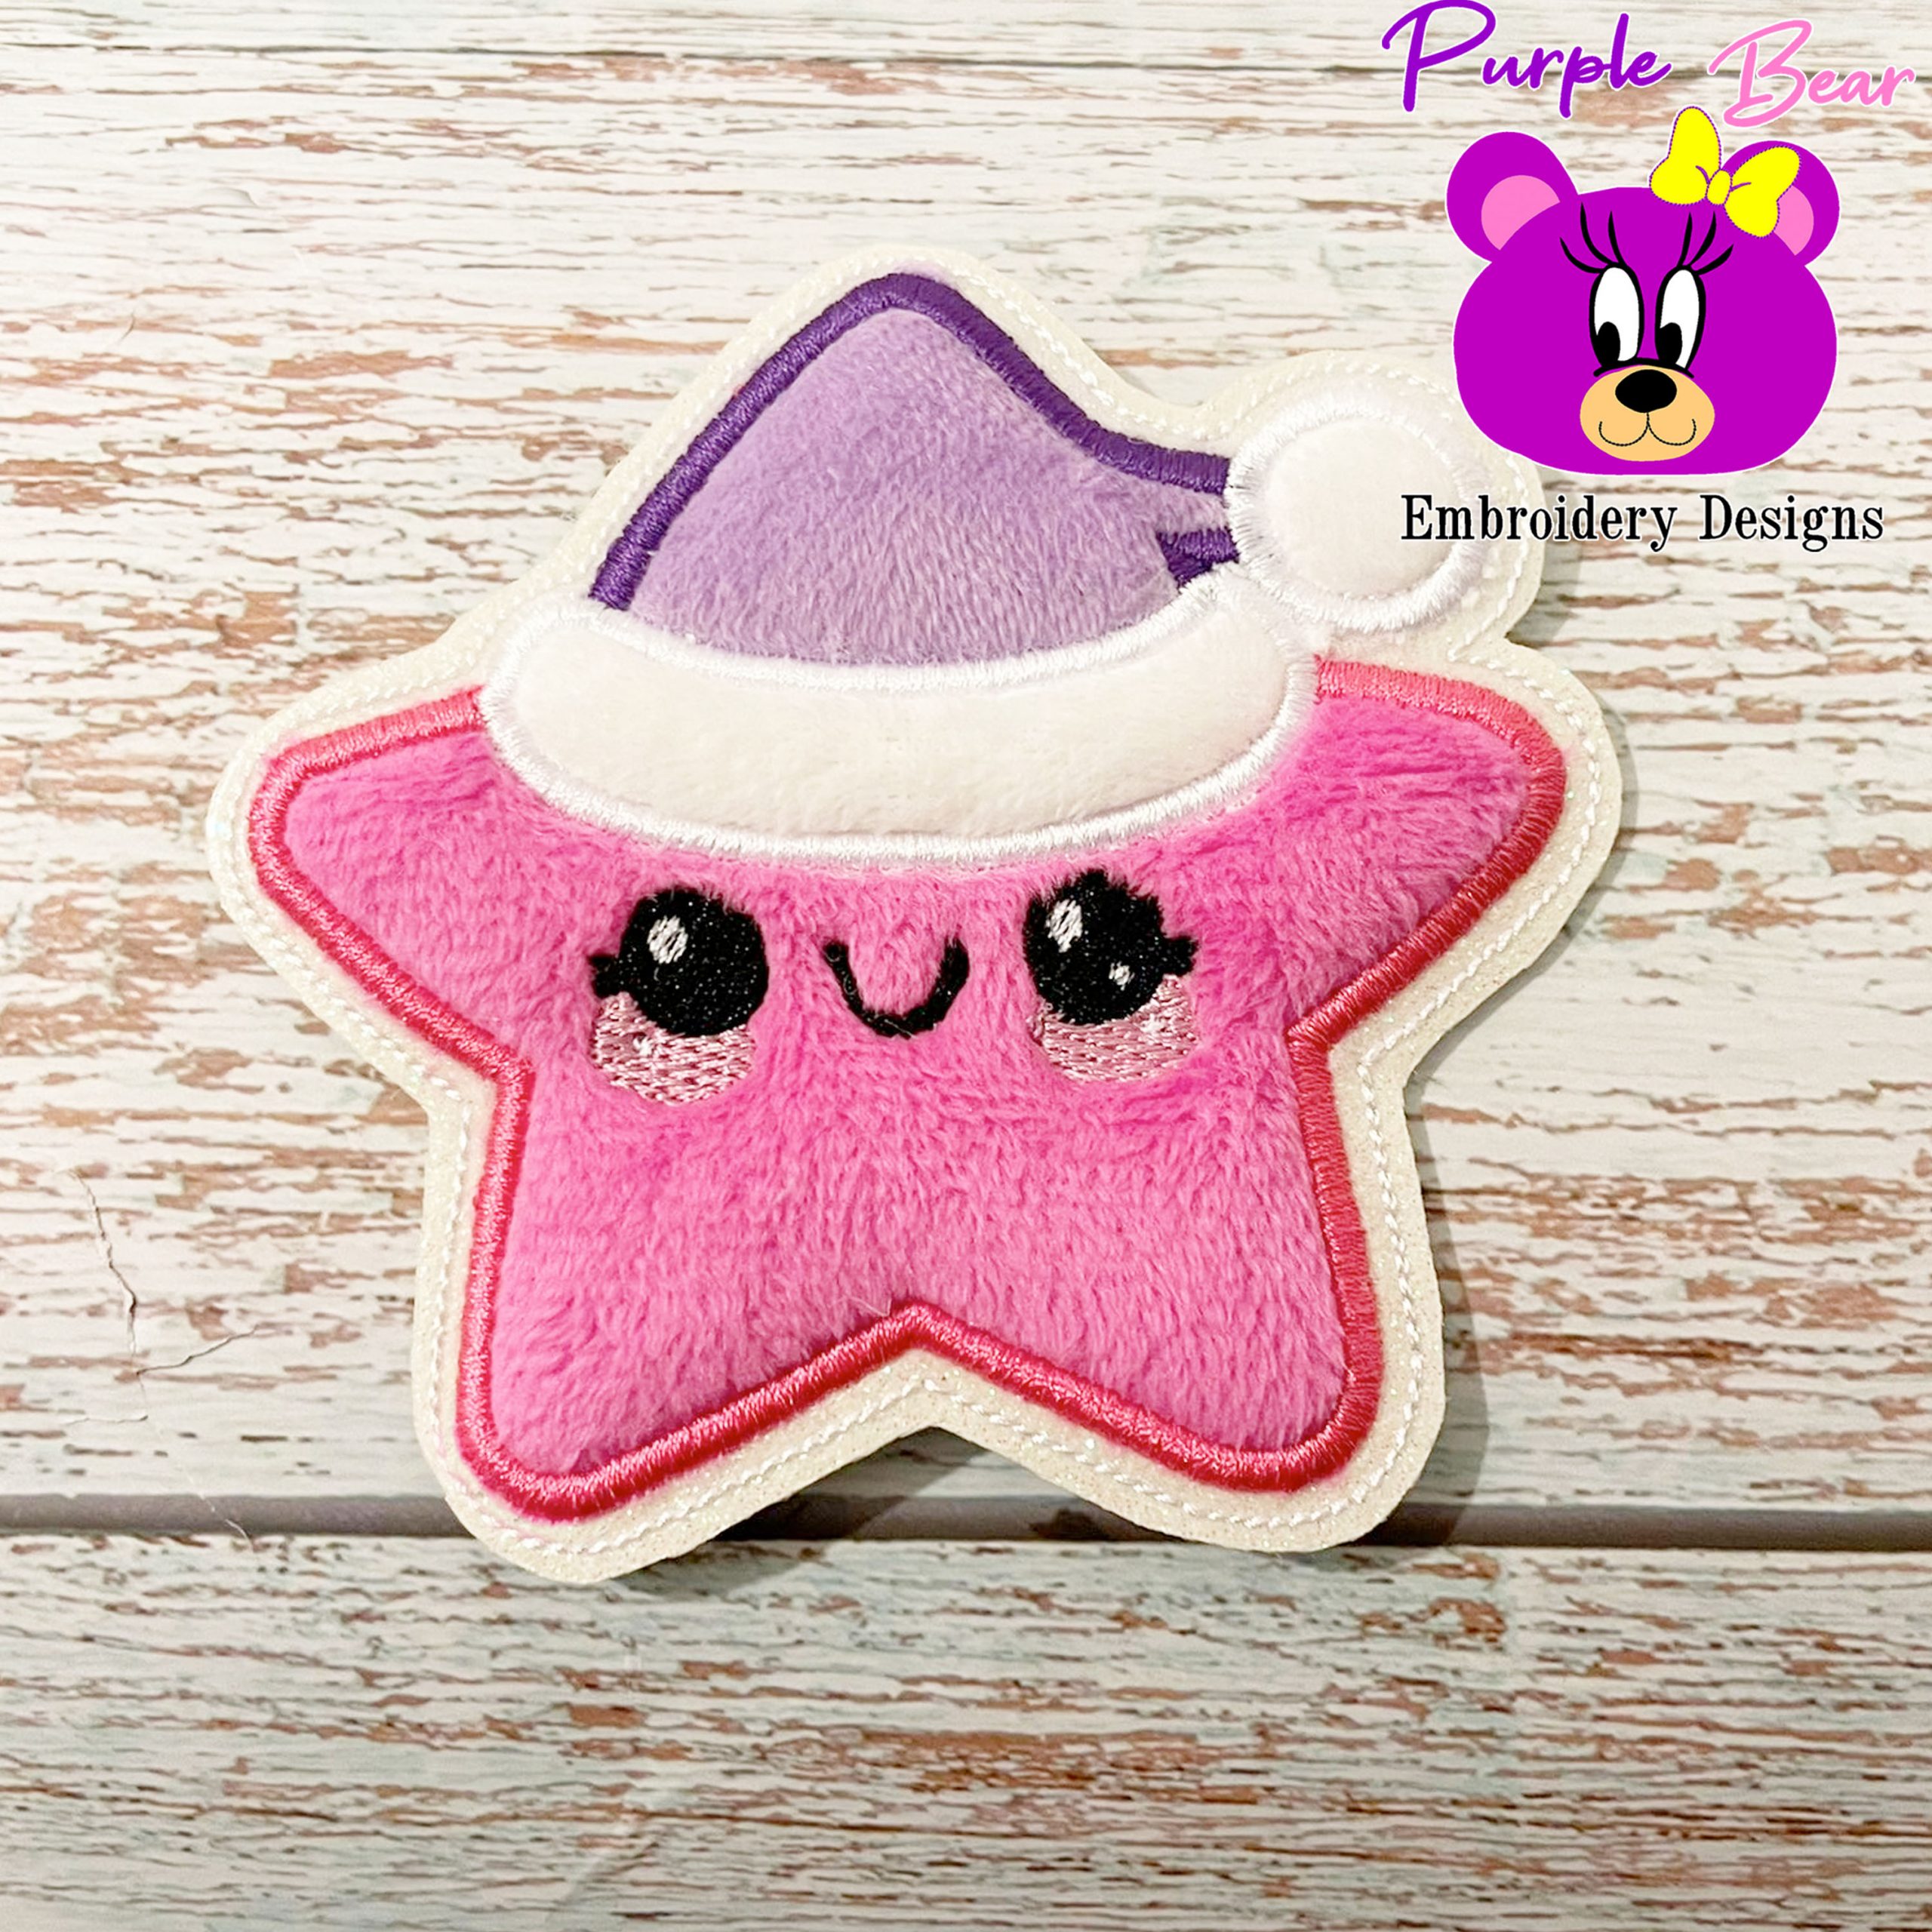 Cute Star in a hat